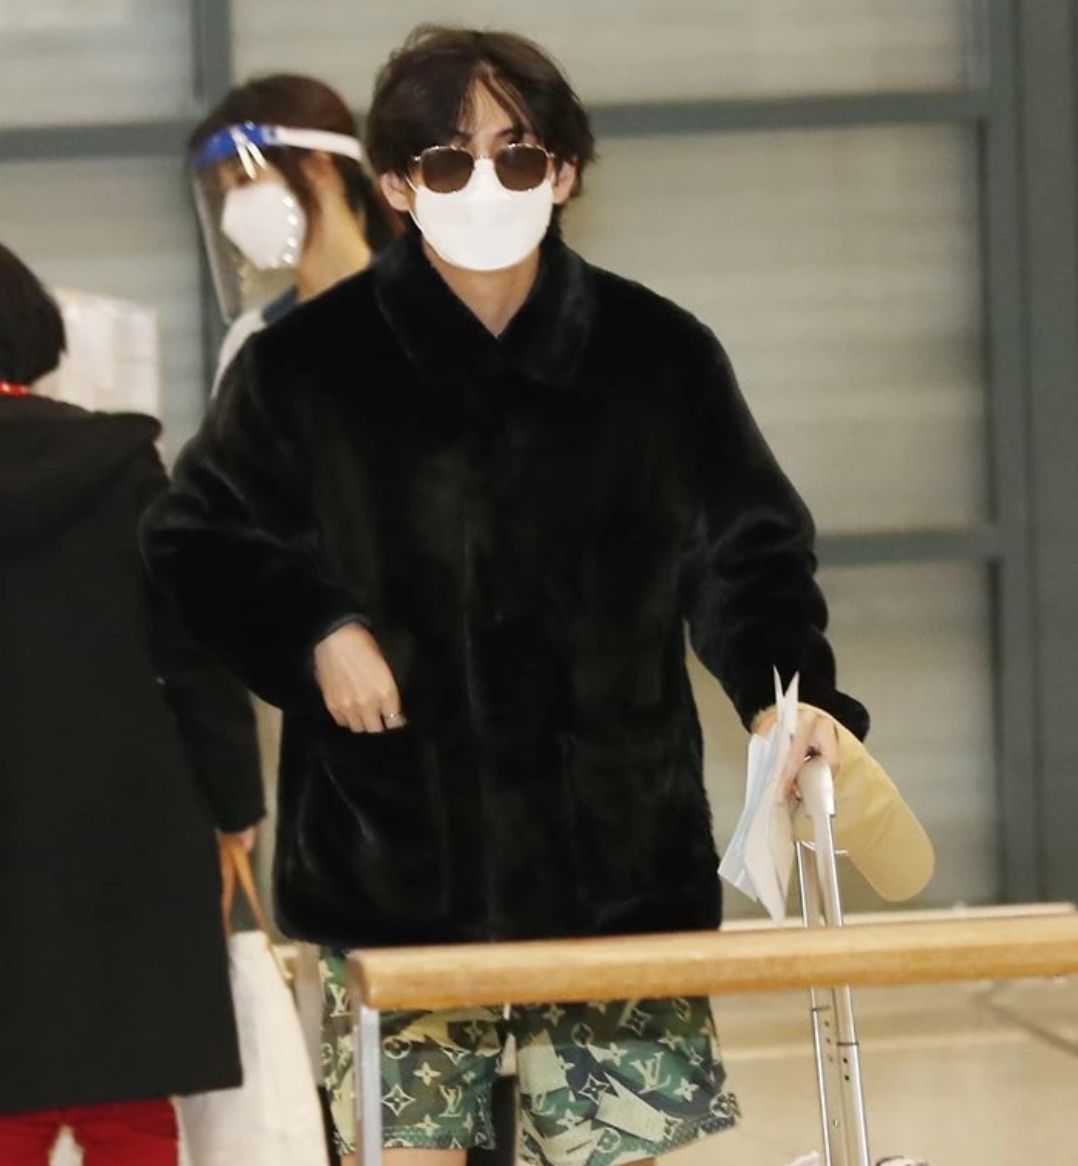 V BTS Tiba di Korea Selatan dengan Selamat, Intip Outfit-nya saat di Bandara